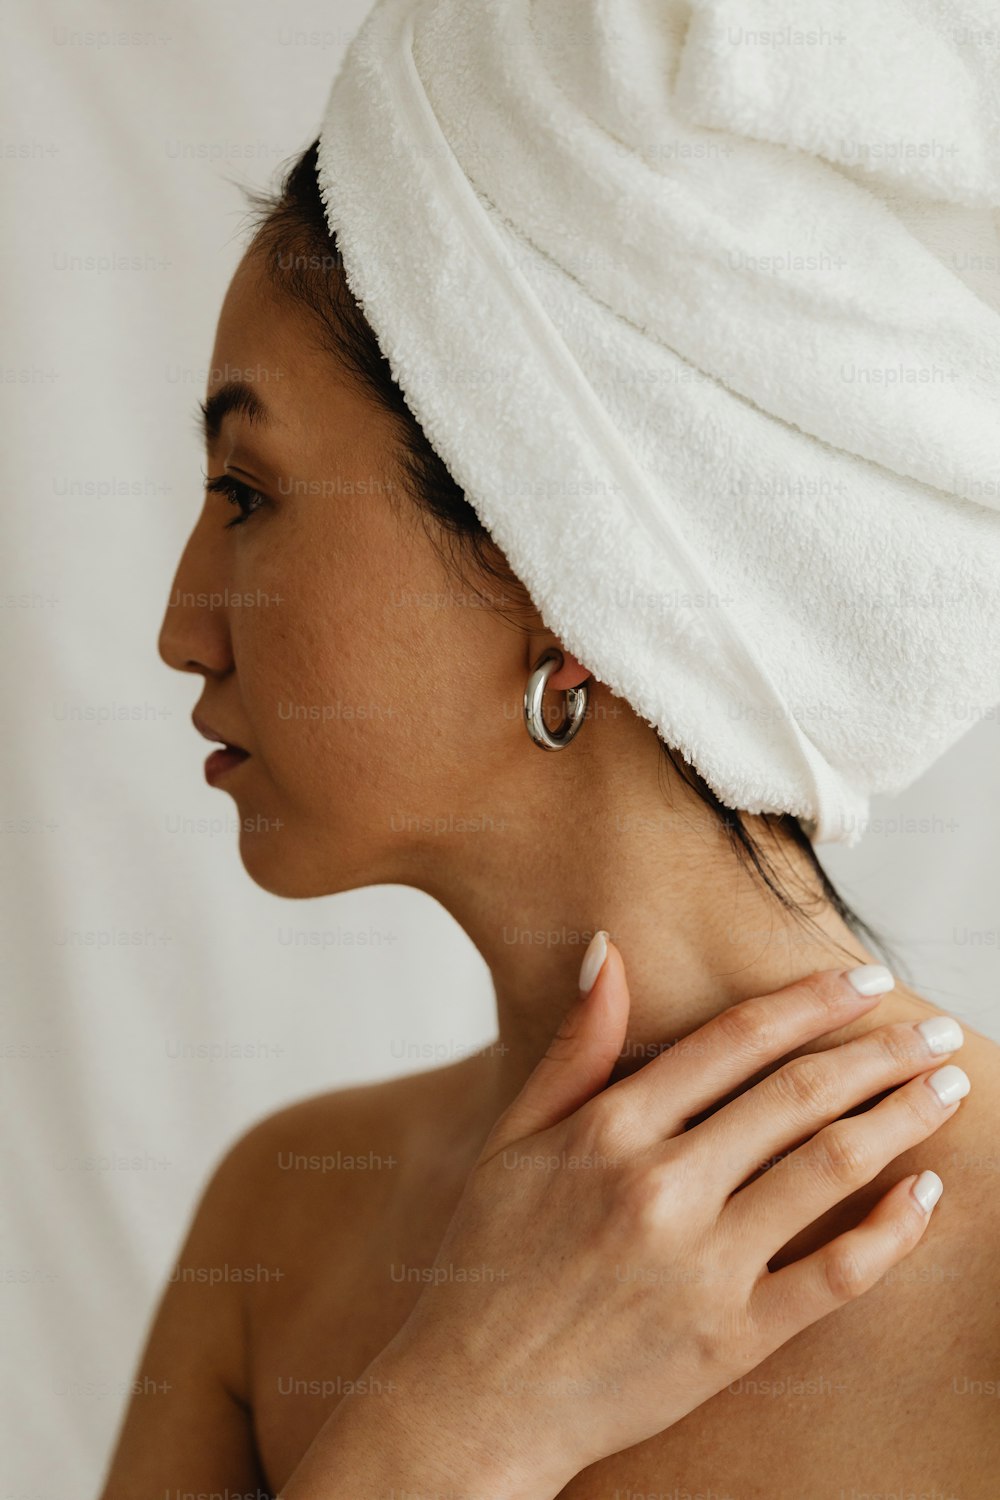 Una mujer con una toalla en la cabeza